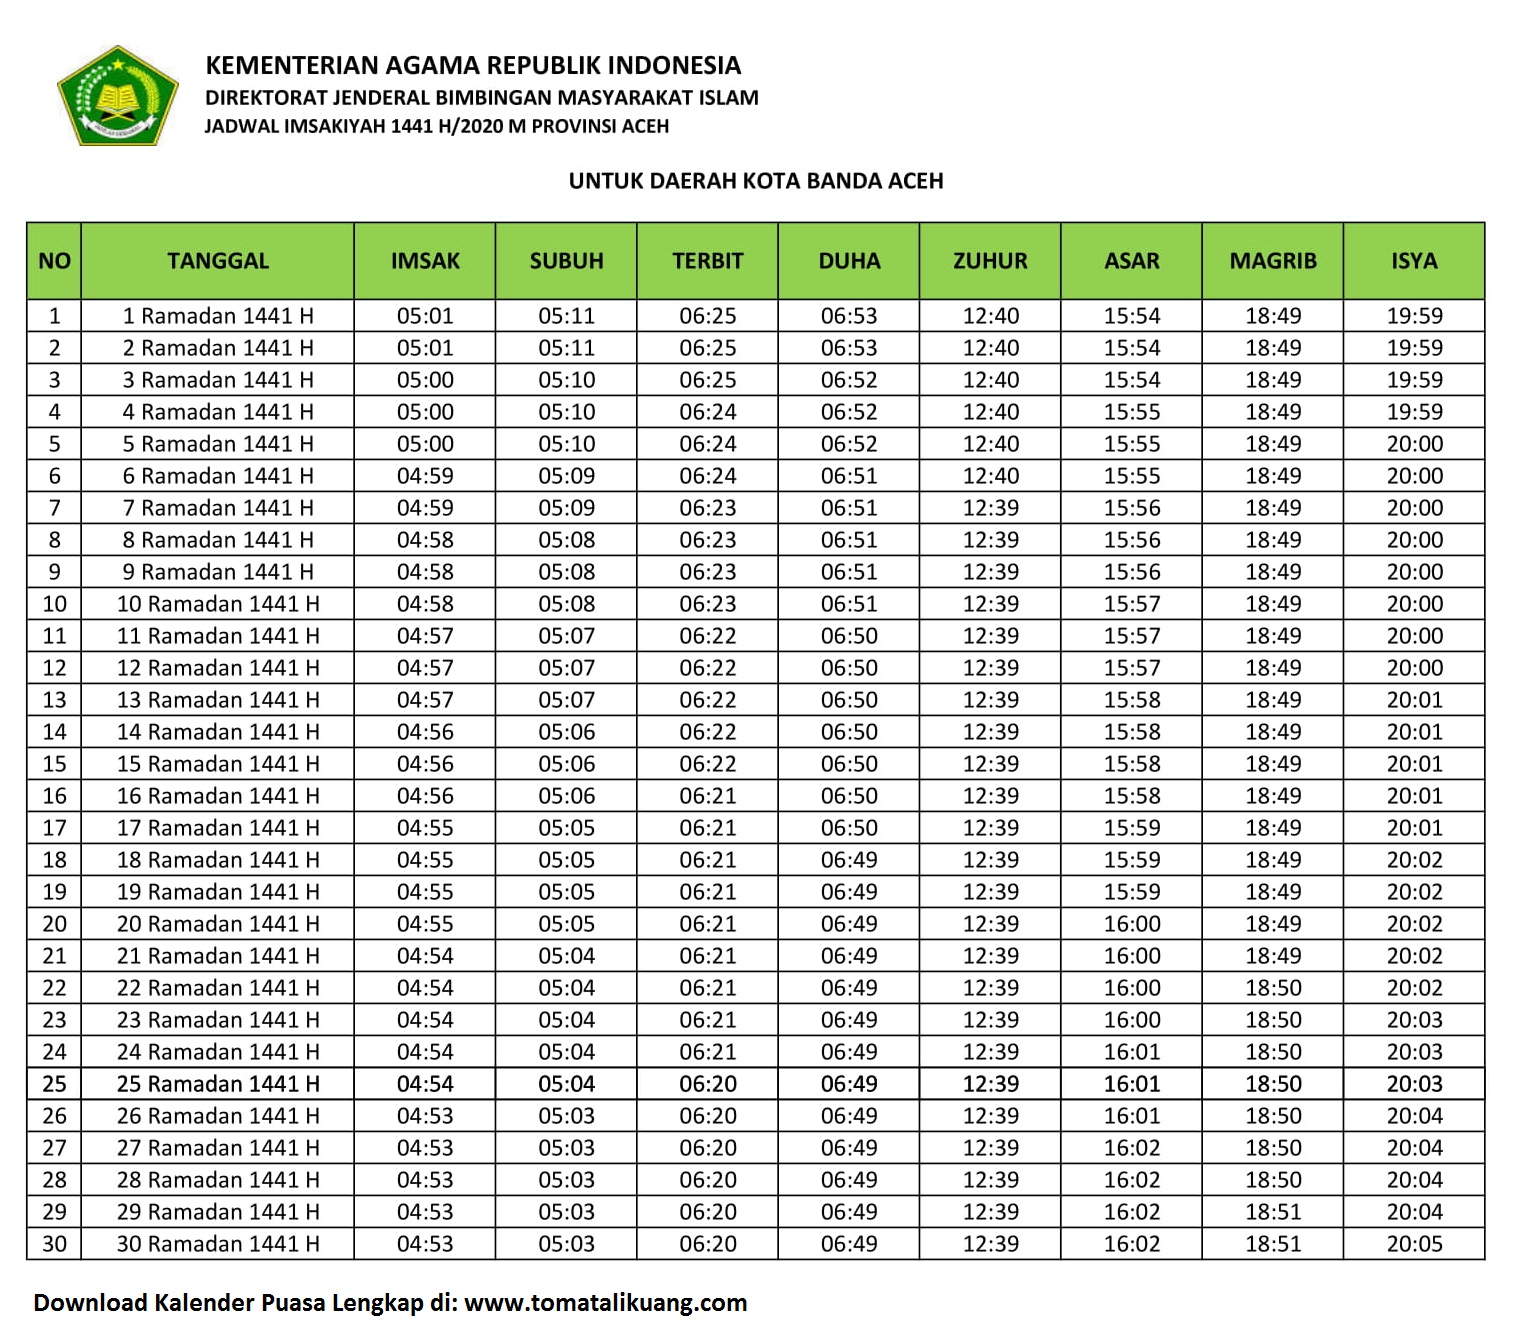 Jadwal Imsakiyah & Buka Puasa Kota Banda Aceh 2020 / 1441 H (Kalender